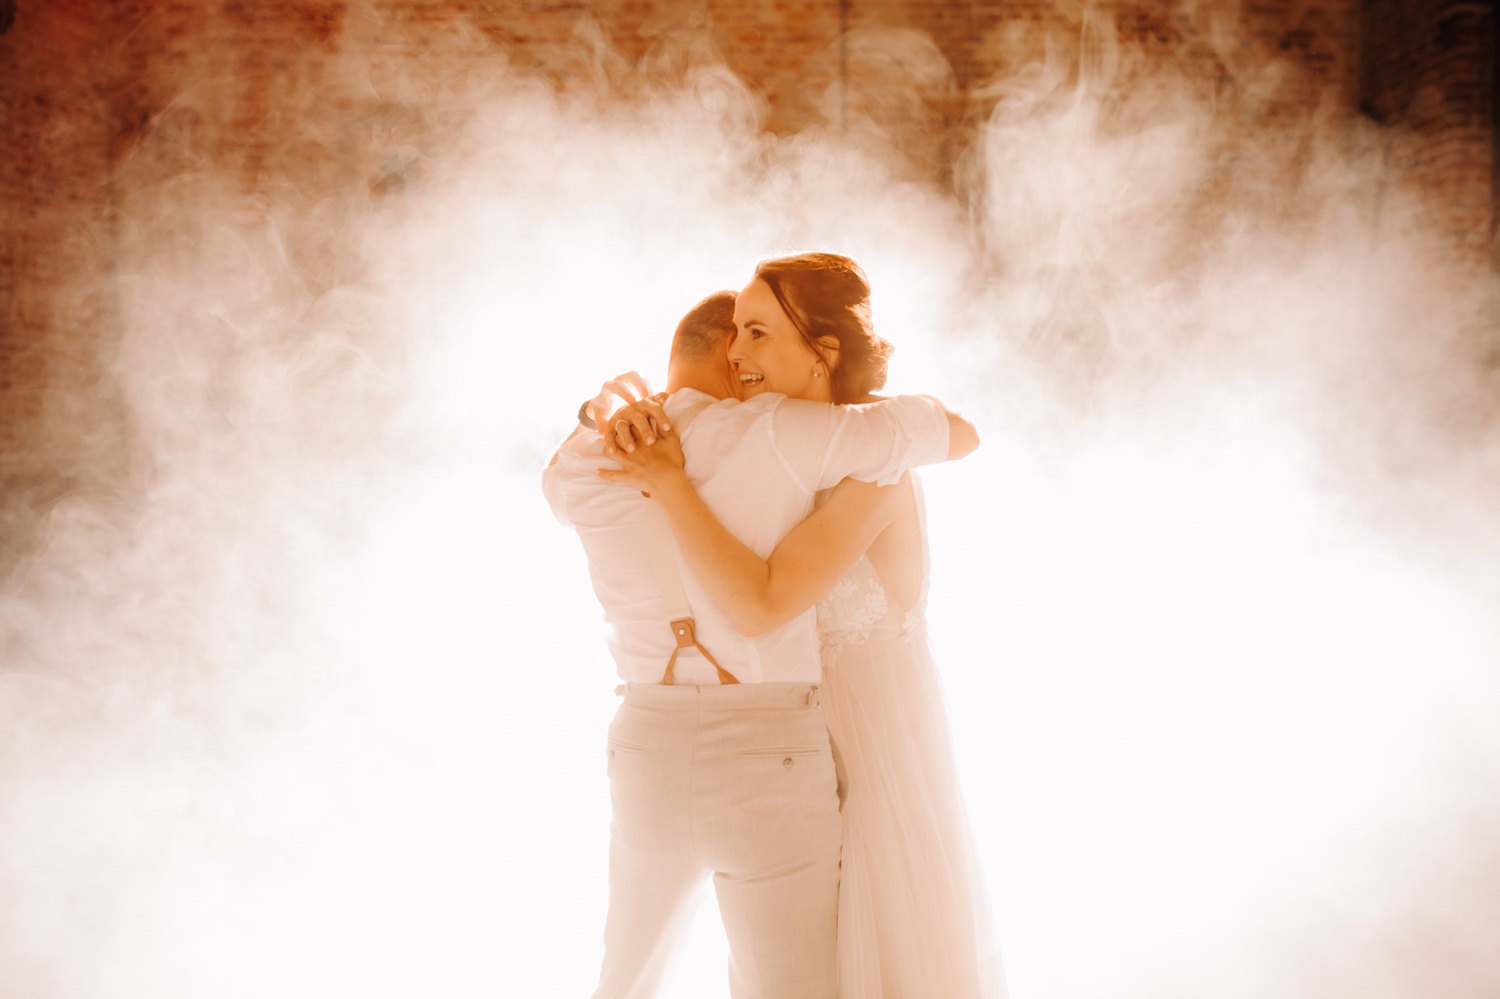 Huwelijksfotograaf Limburg - bruidspaar verdwijnt in de rook tijdens openingsdans